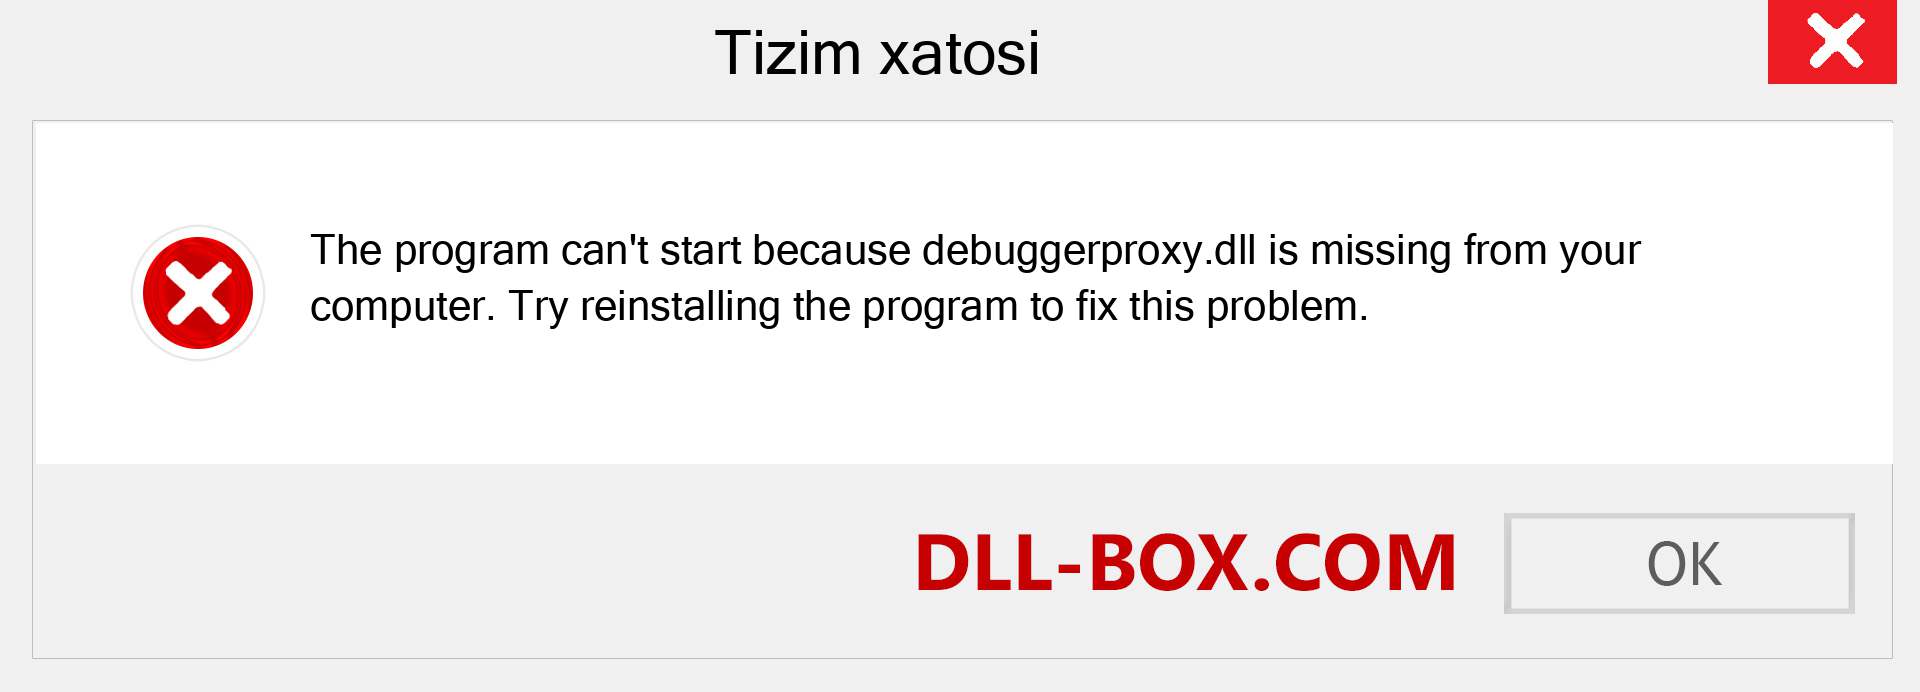 debuggerproxy.dll fayli yo'qolganmi?. Windows 7, 8, 10 uchun yuklab olish - Windowsda debuggerproxy dll etishmayotgan xatoni tuzating, rasmlar, rasmlar